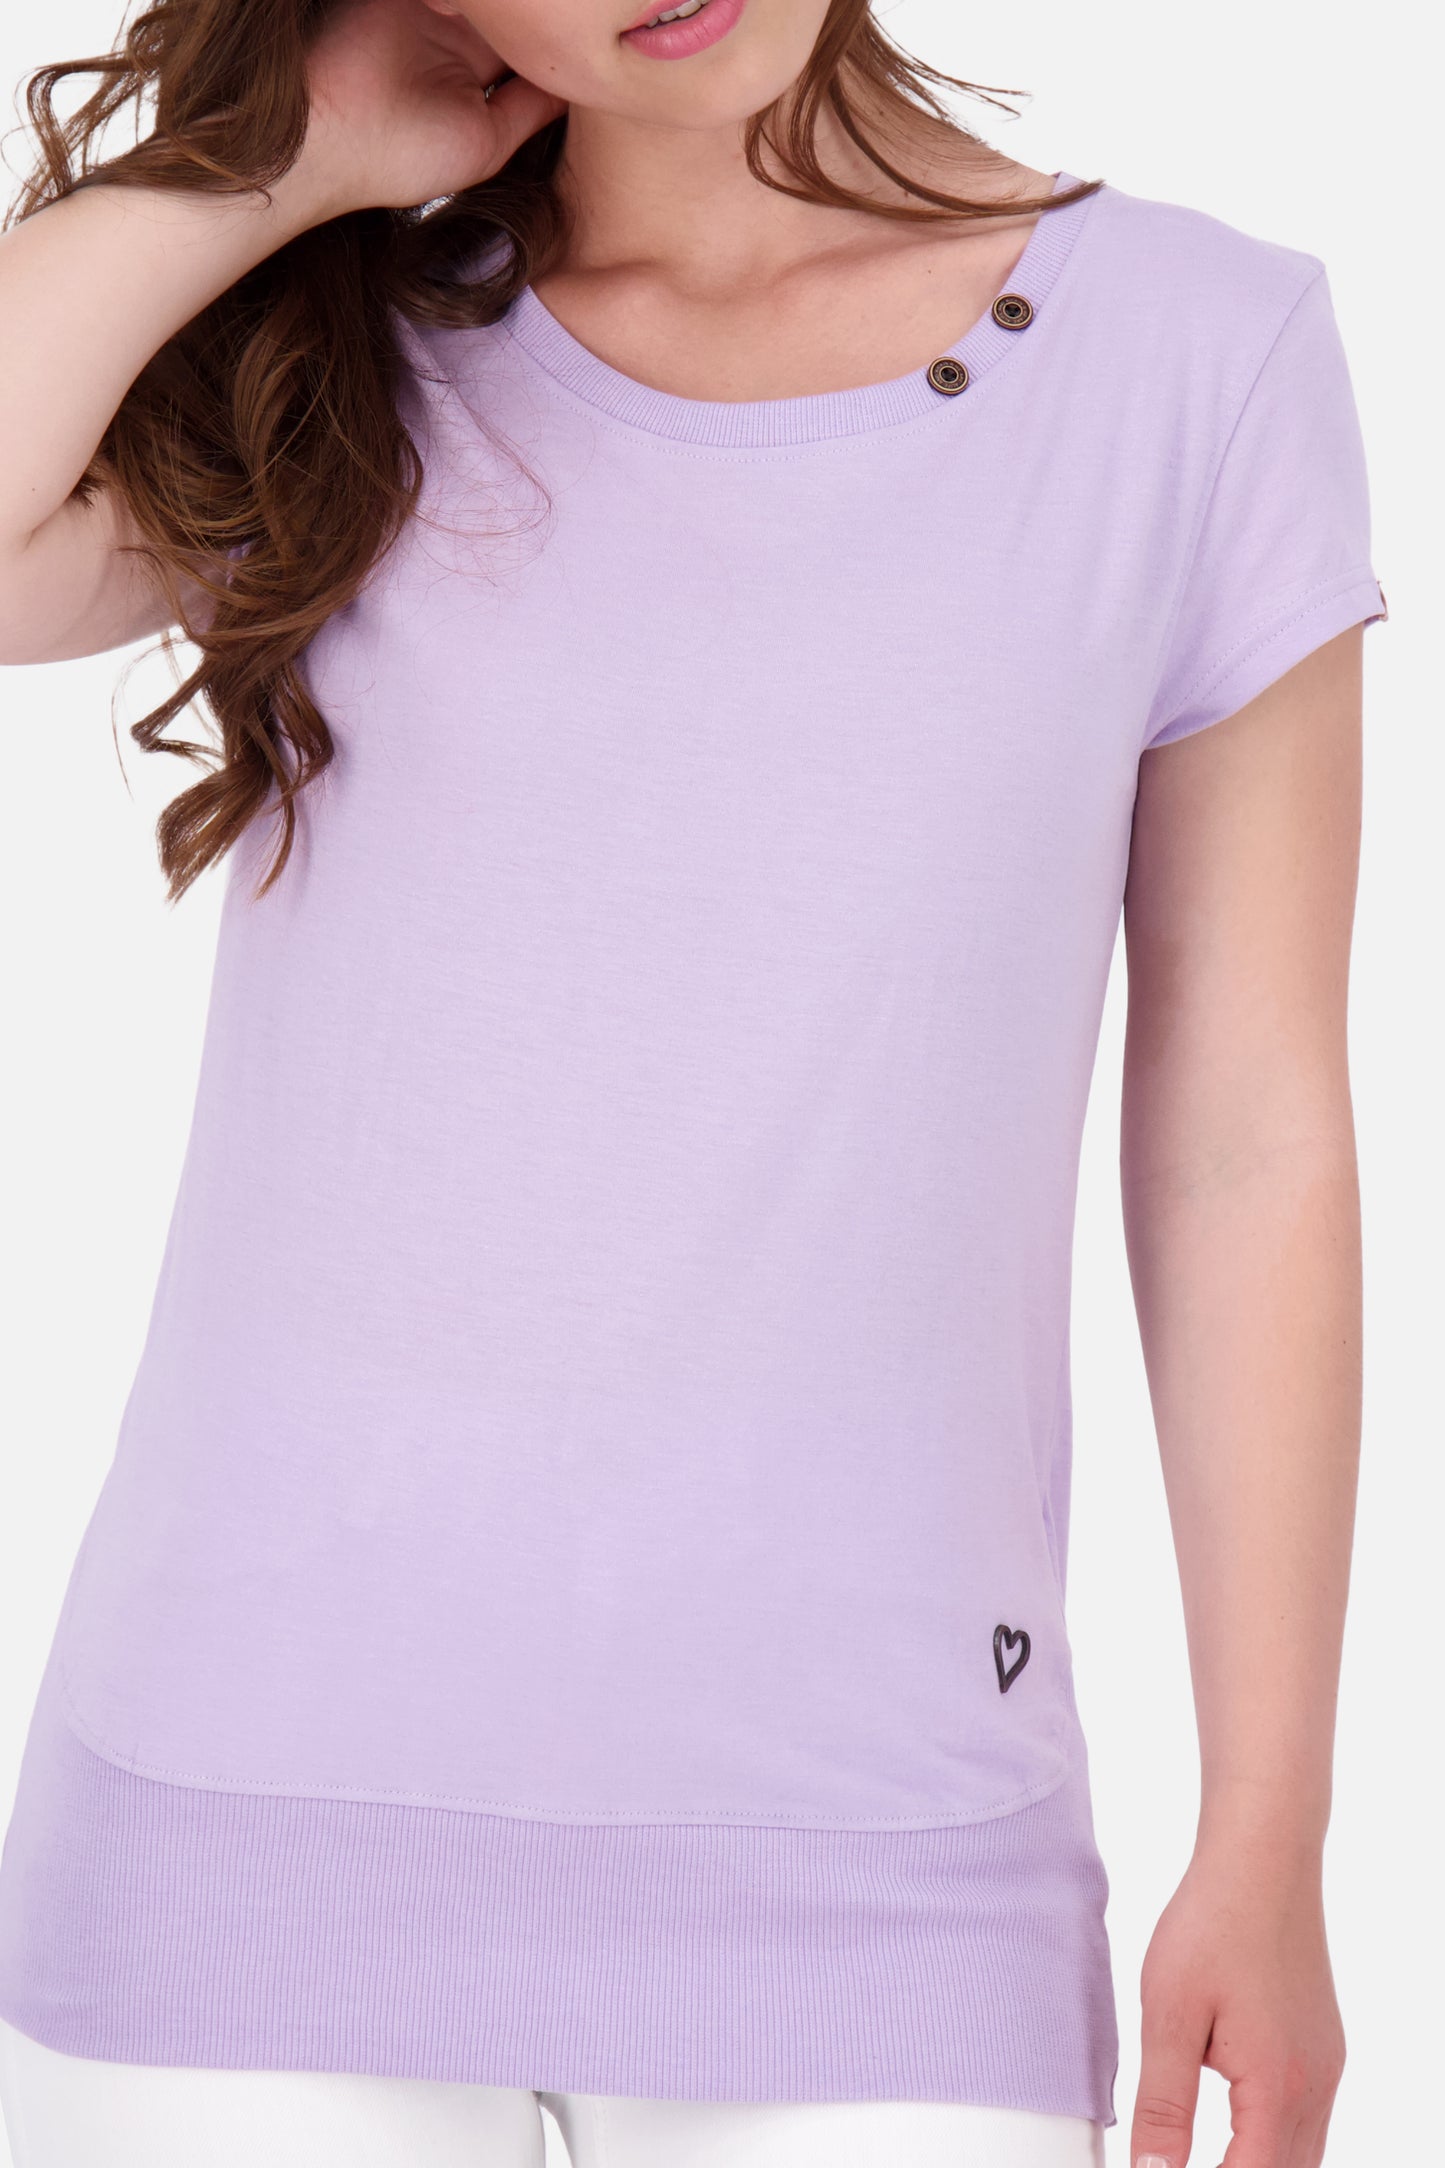 CocoAK A T-Shirt von Alife and Kickin: Farbenfroh und modisch Violett